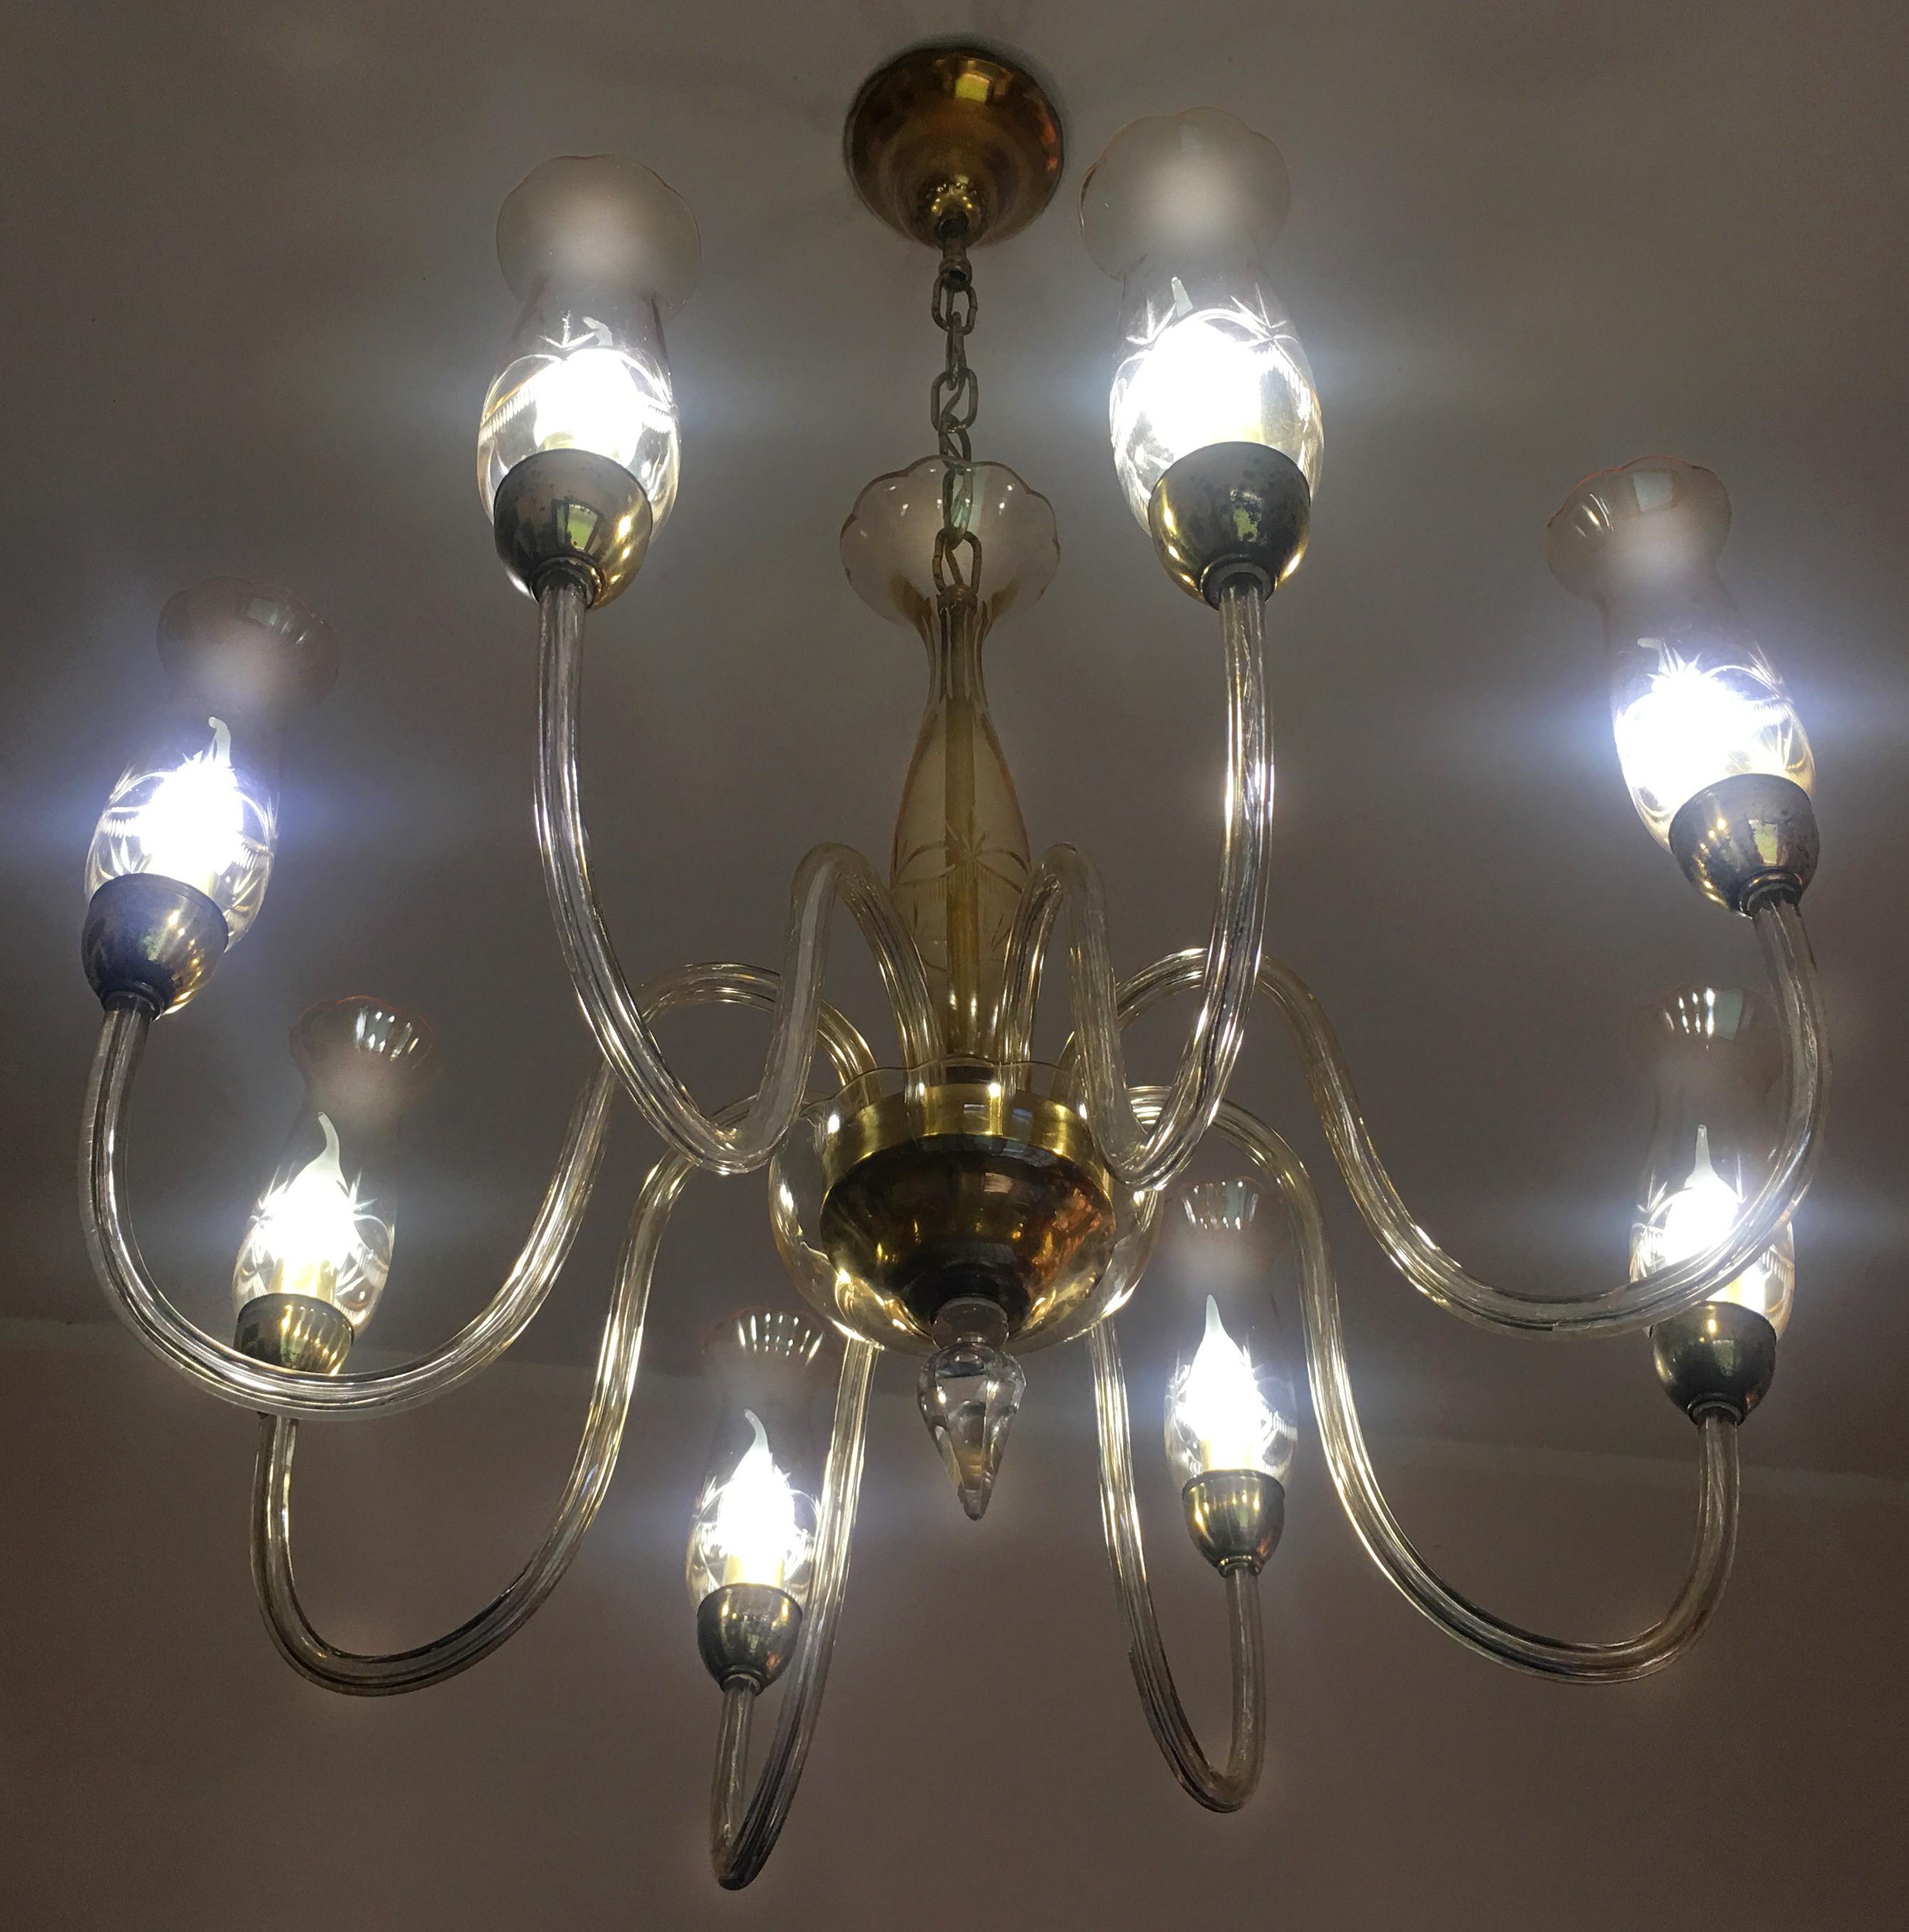 Eleganter De Majo-Kronleuchter mit 8 Lichtern aus geblasenem Kristall, gearbeitet nach der alten Tradition von Murano, Bernsteinglas und goldenem Rahmen.
Vorbereitet für n. 8 Glühbirnen E14 Halogen eco max 42W oder neue LED-Lampen -